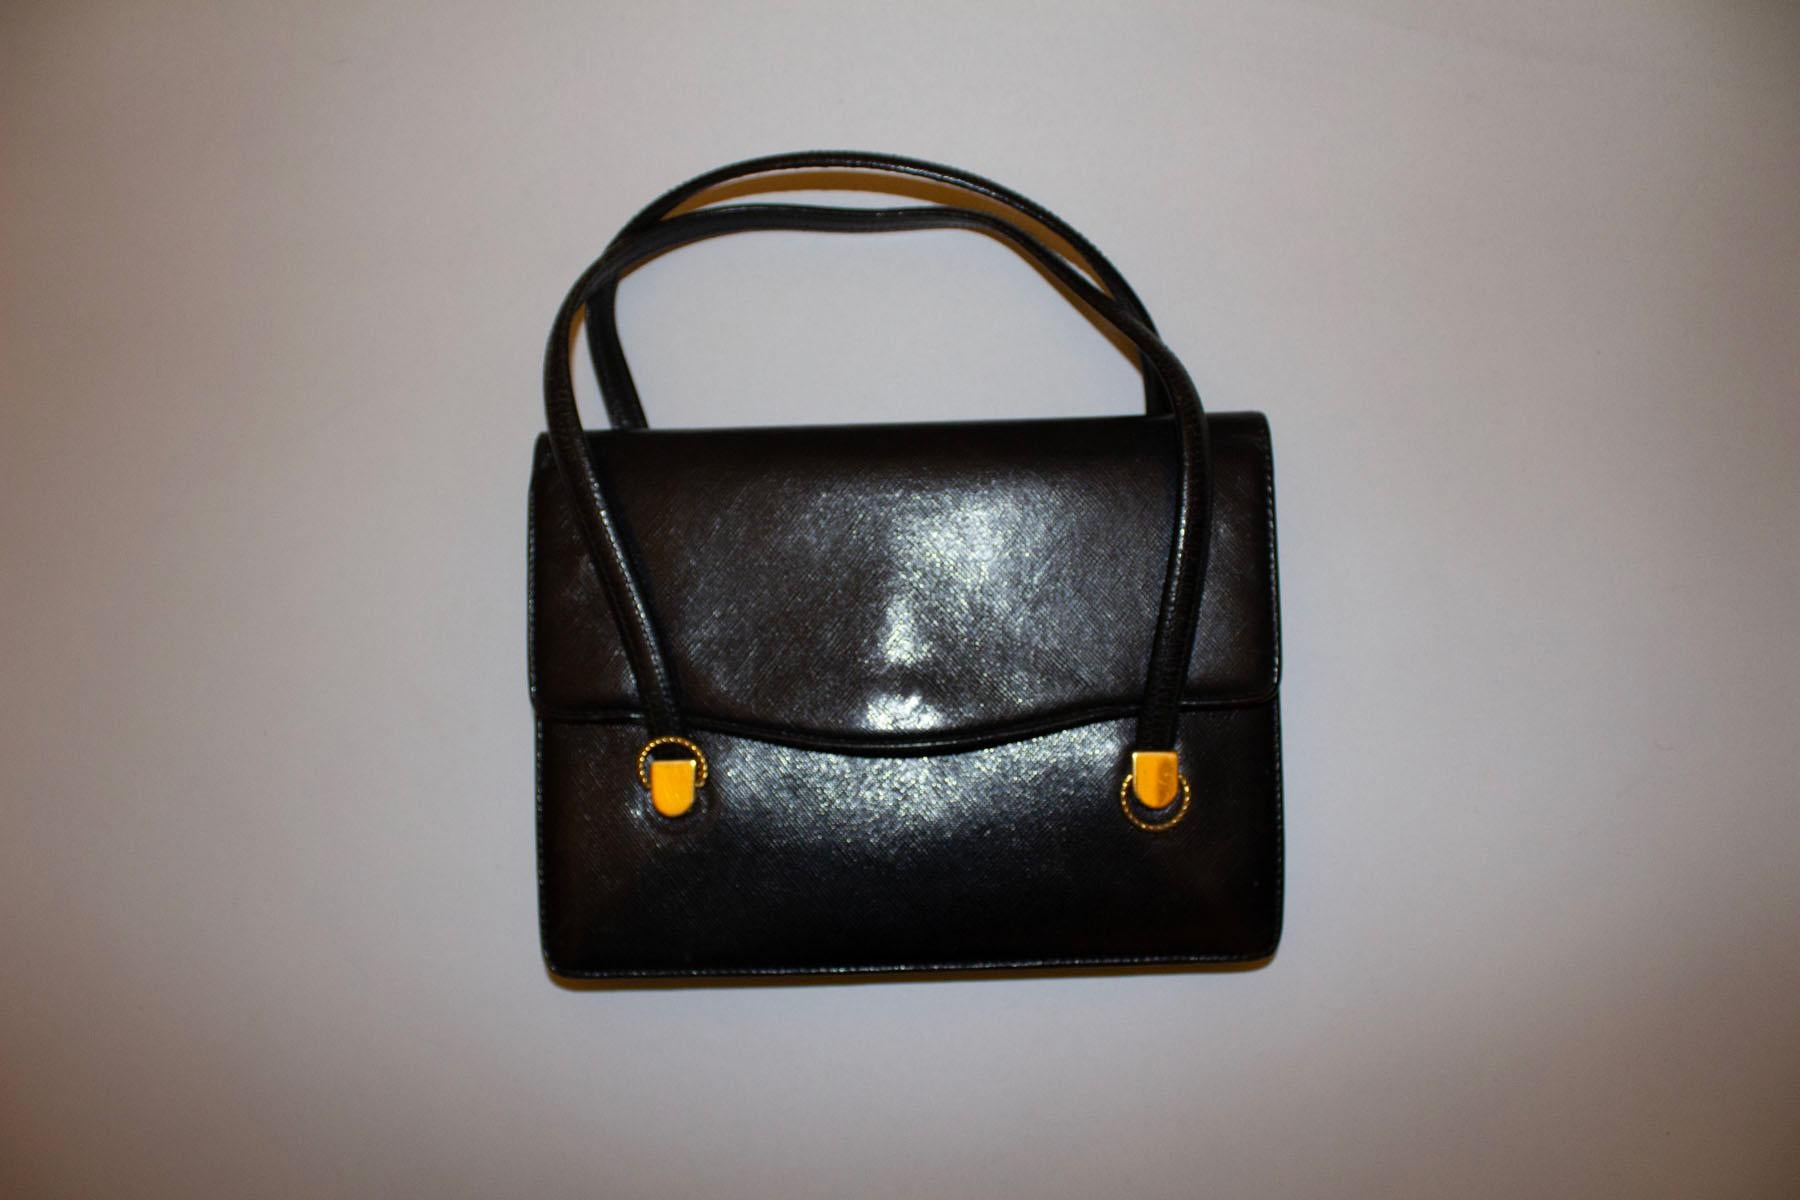 Un sac à main vintage chic en cuir noir de Gucci.
Datant des années 1960, le sac présente de jolis détails dorés sur le devant, ainsi qu'une poche intérieure zippée et deux poches intérieures. Il se ferme à l'aide d'une fermeture à glissière sur le